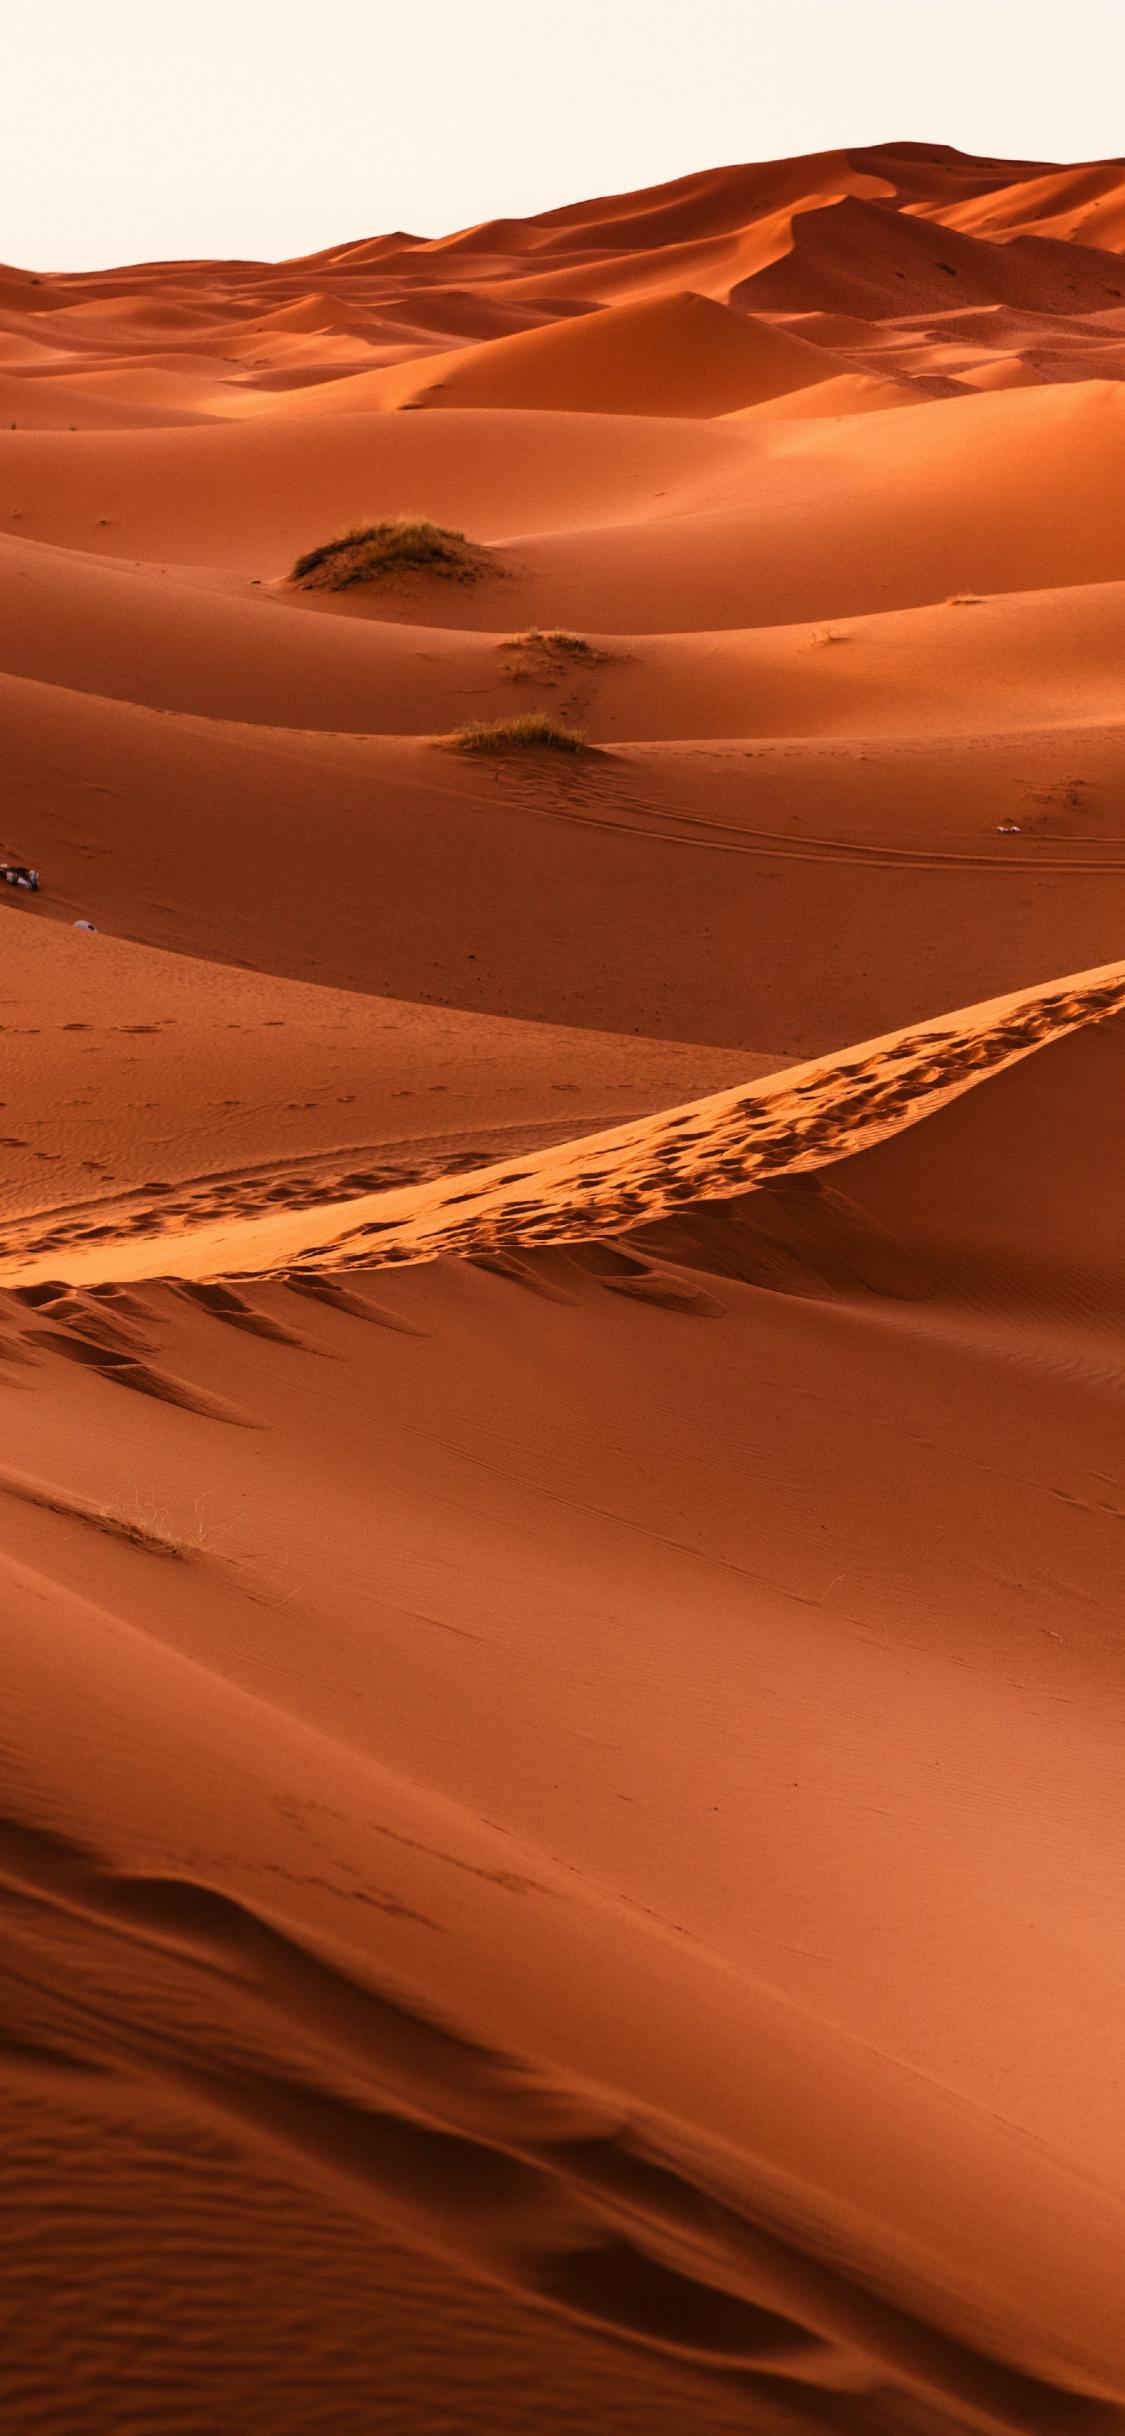 Morocco, Desert, Sand, Dunes, Wallpaper Image Of Desert, HD